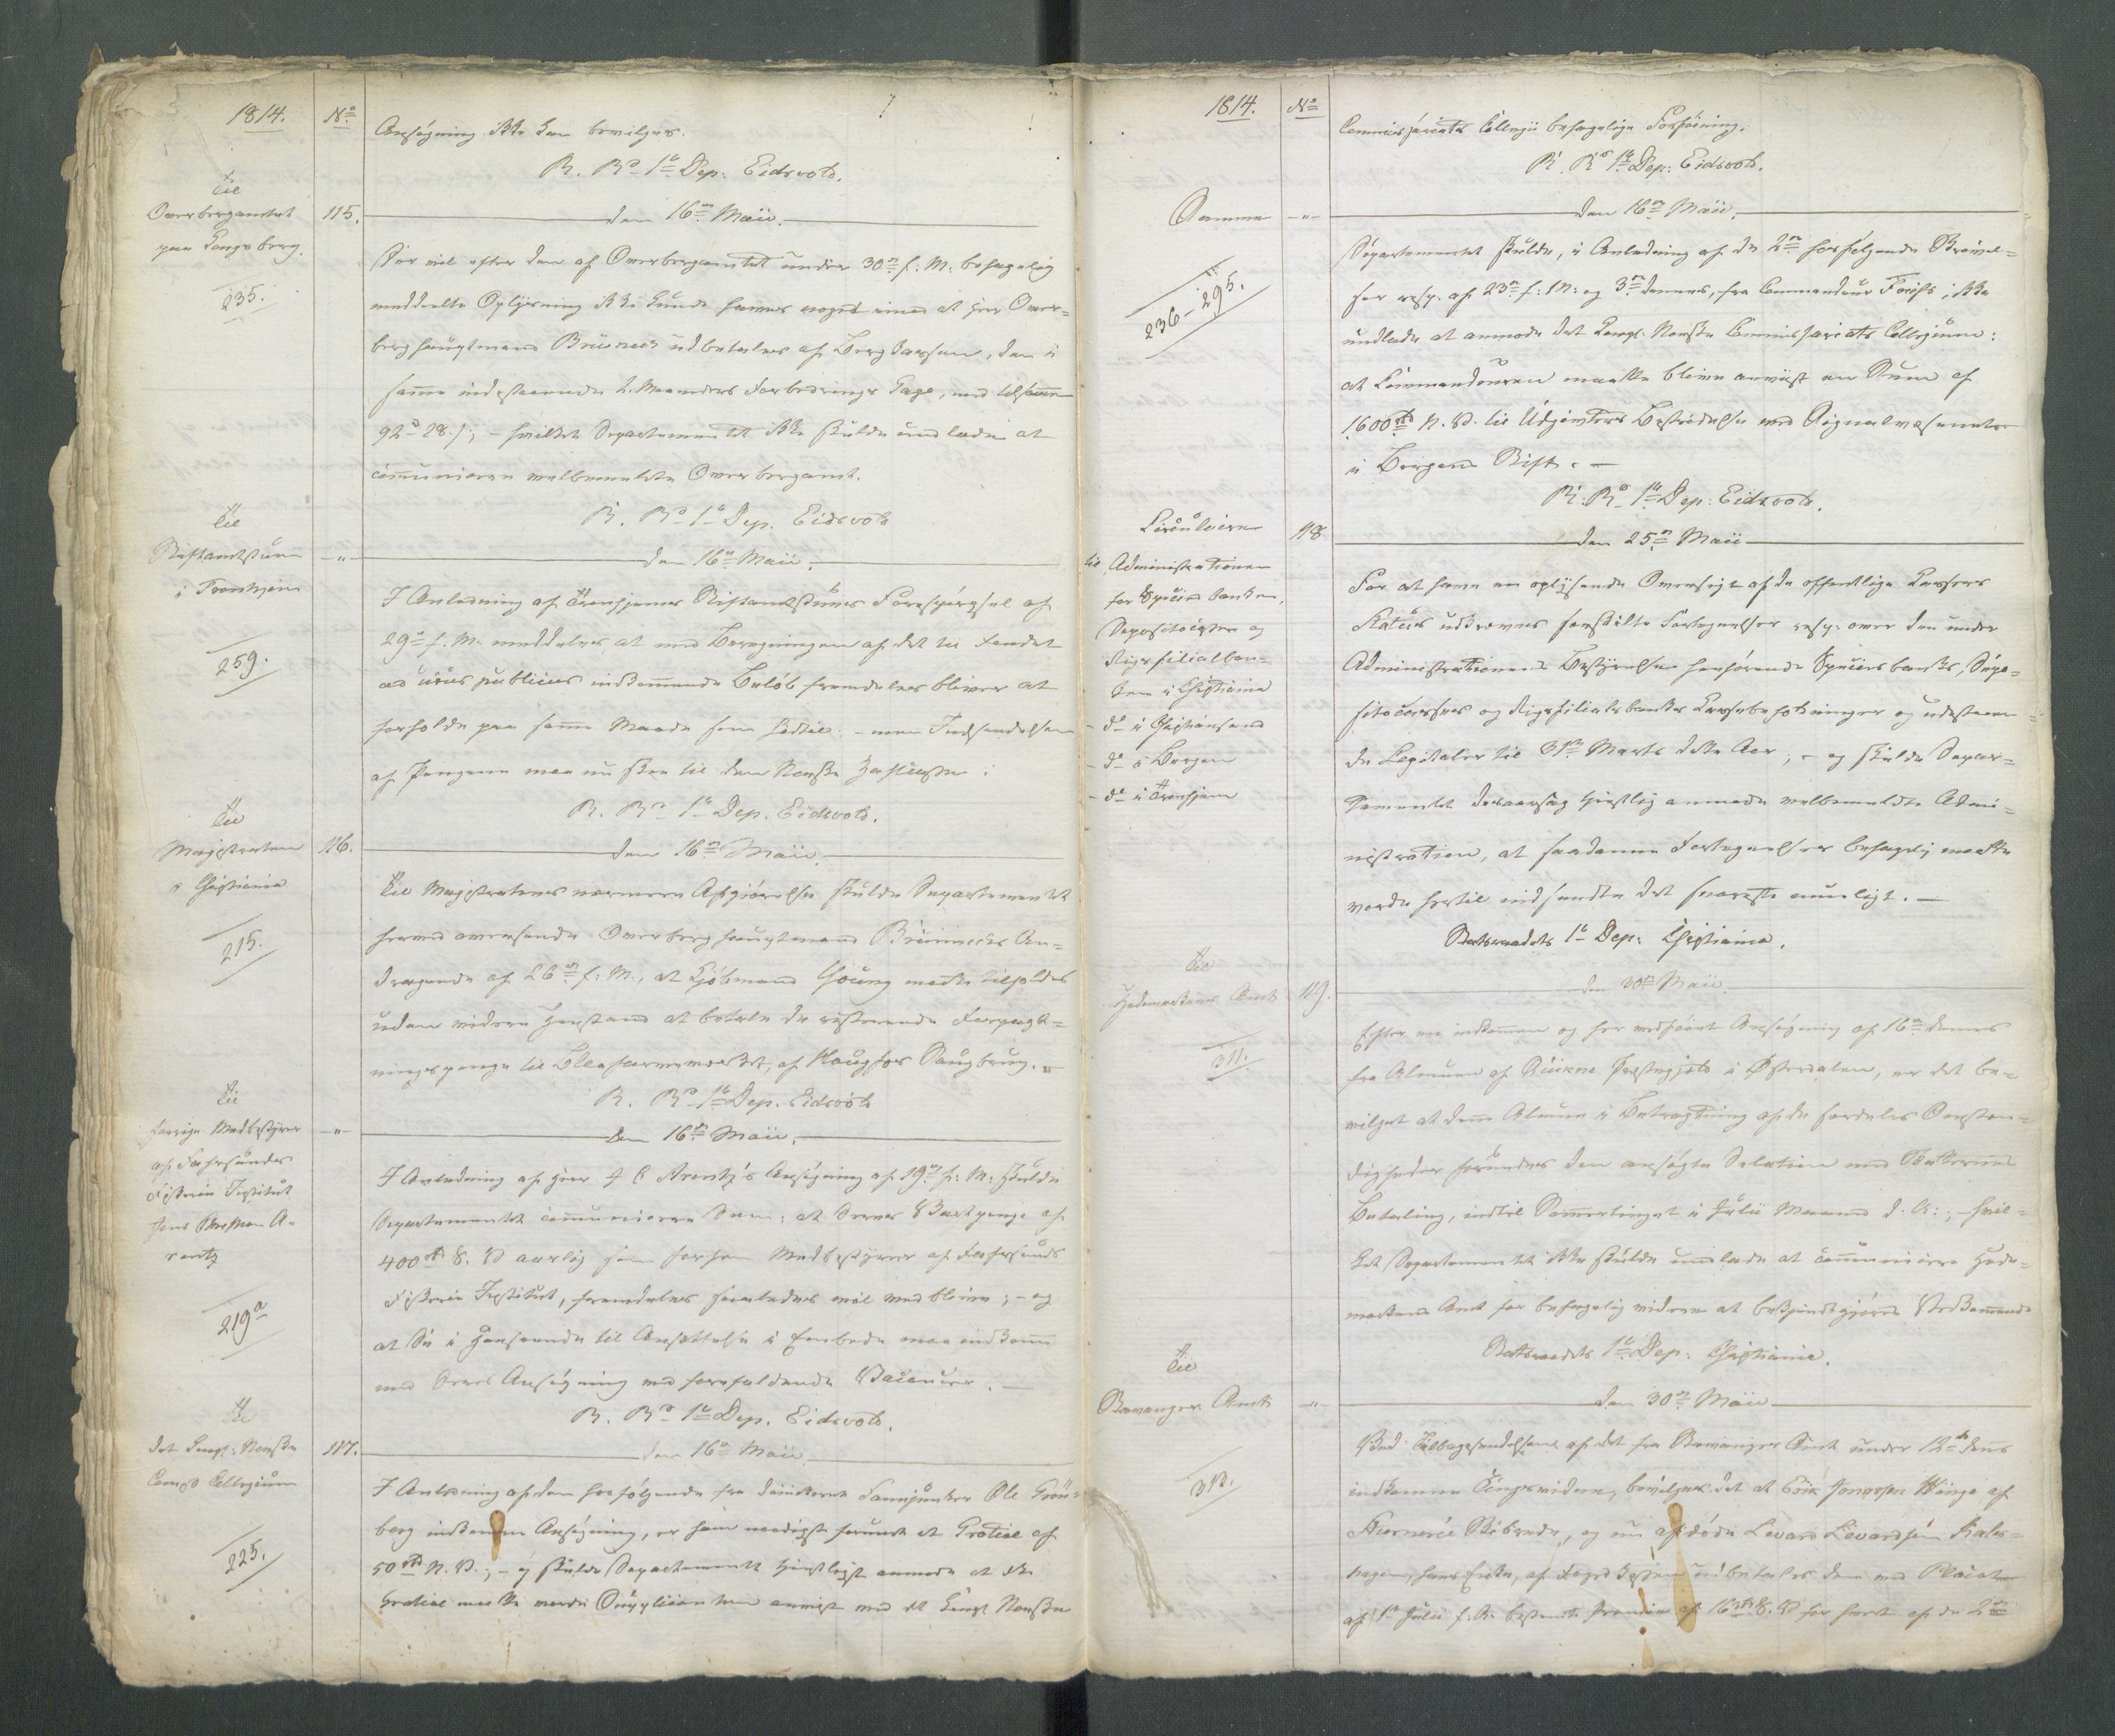 Departementene i 1814, RA/S-3899/Fa/L0002: 1. byrå - Kopibok A 1-173, 1814